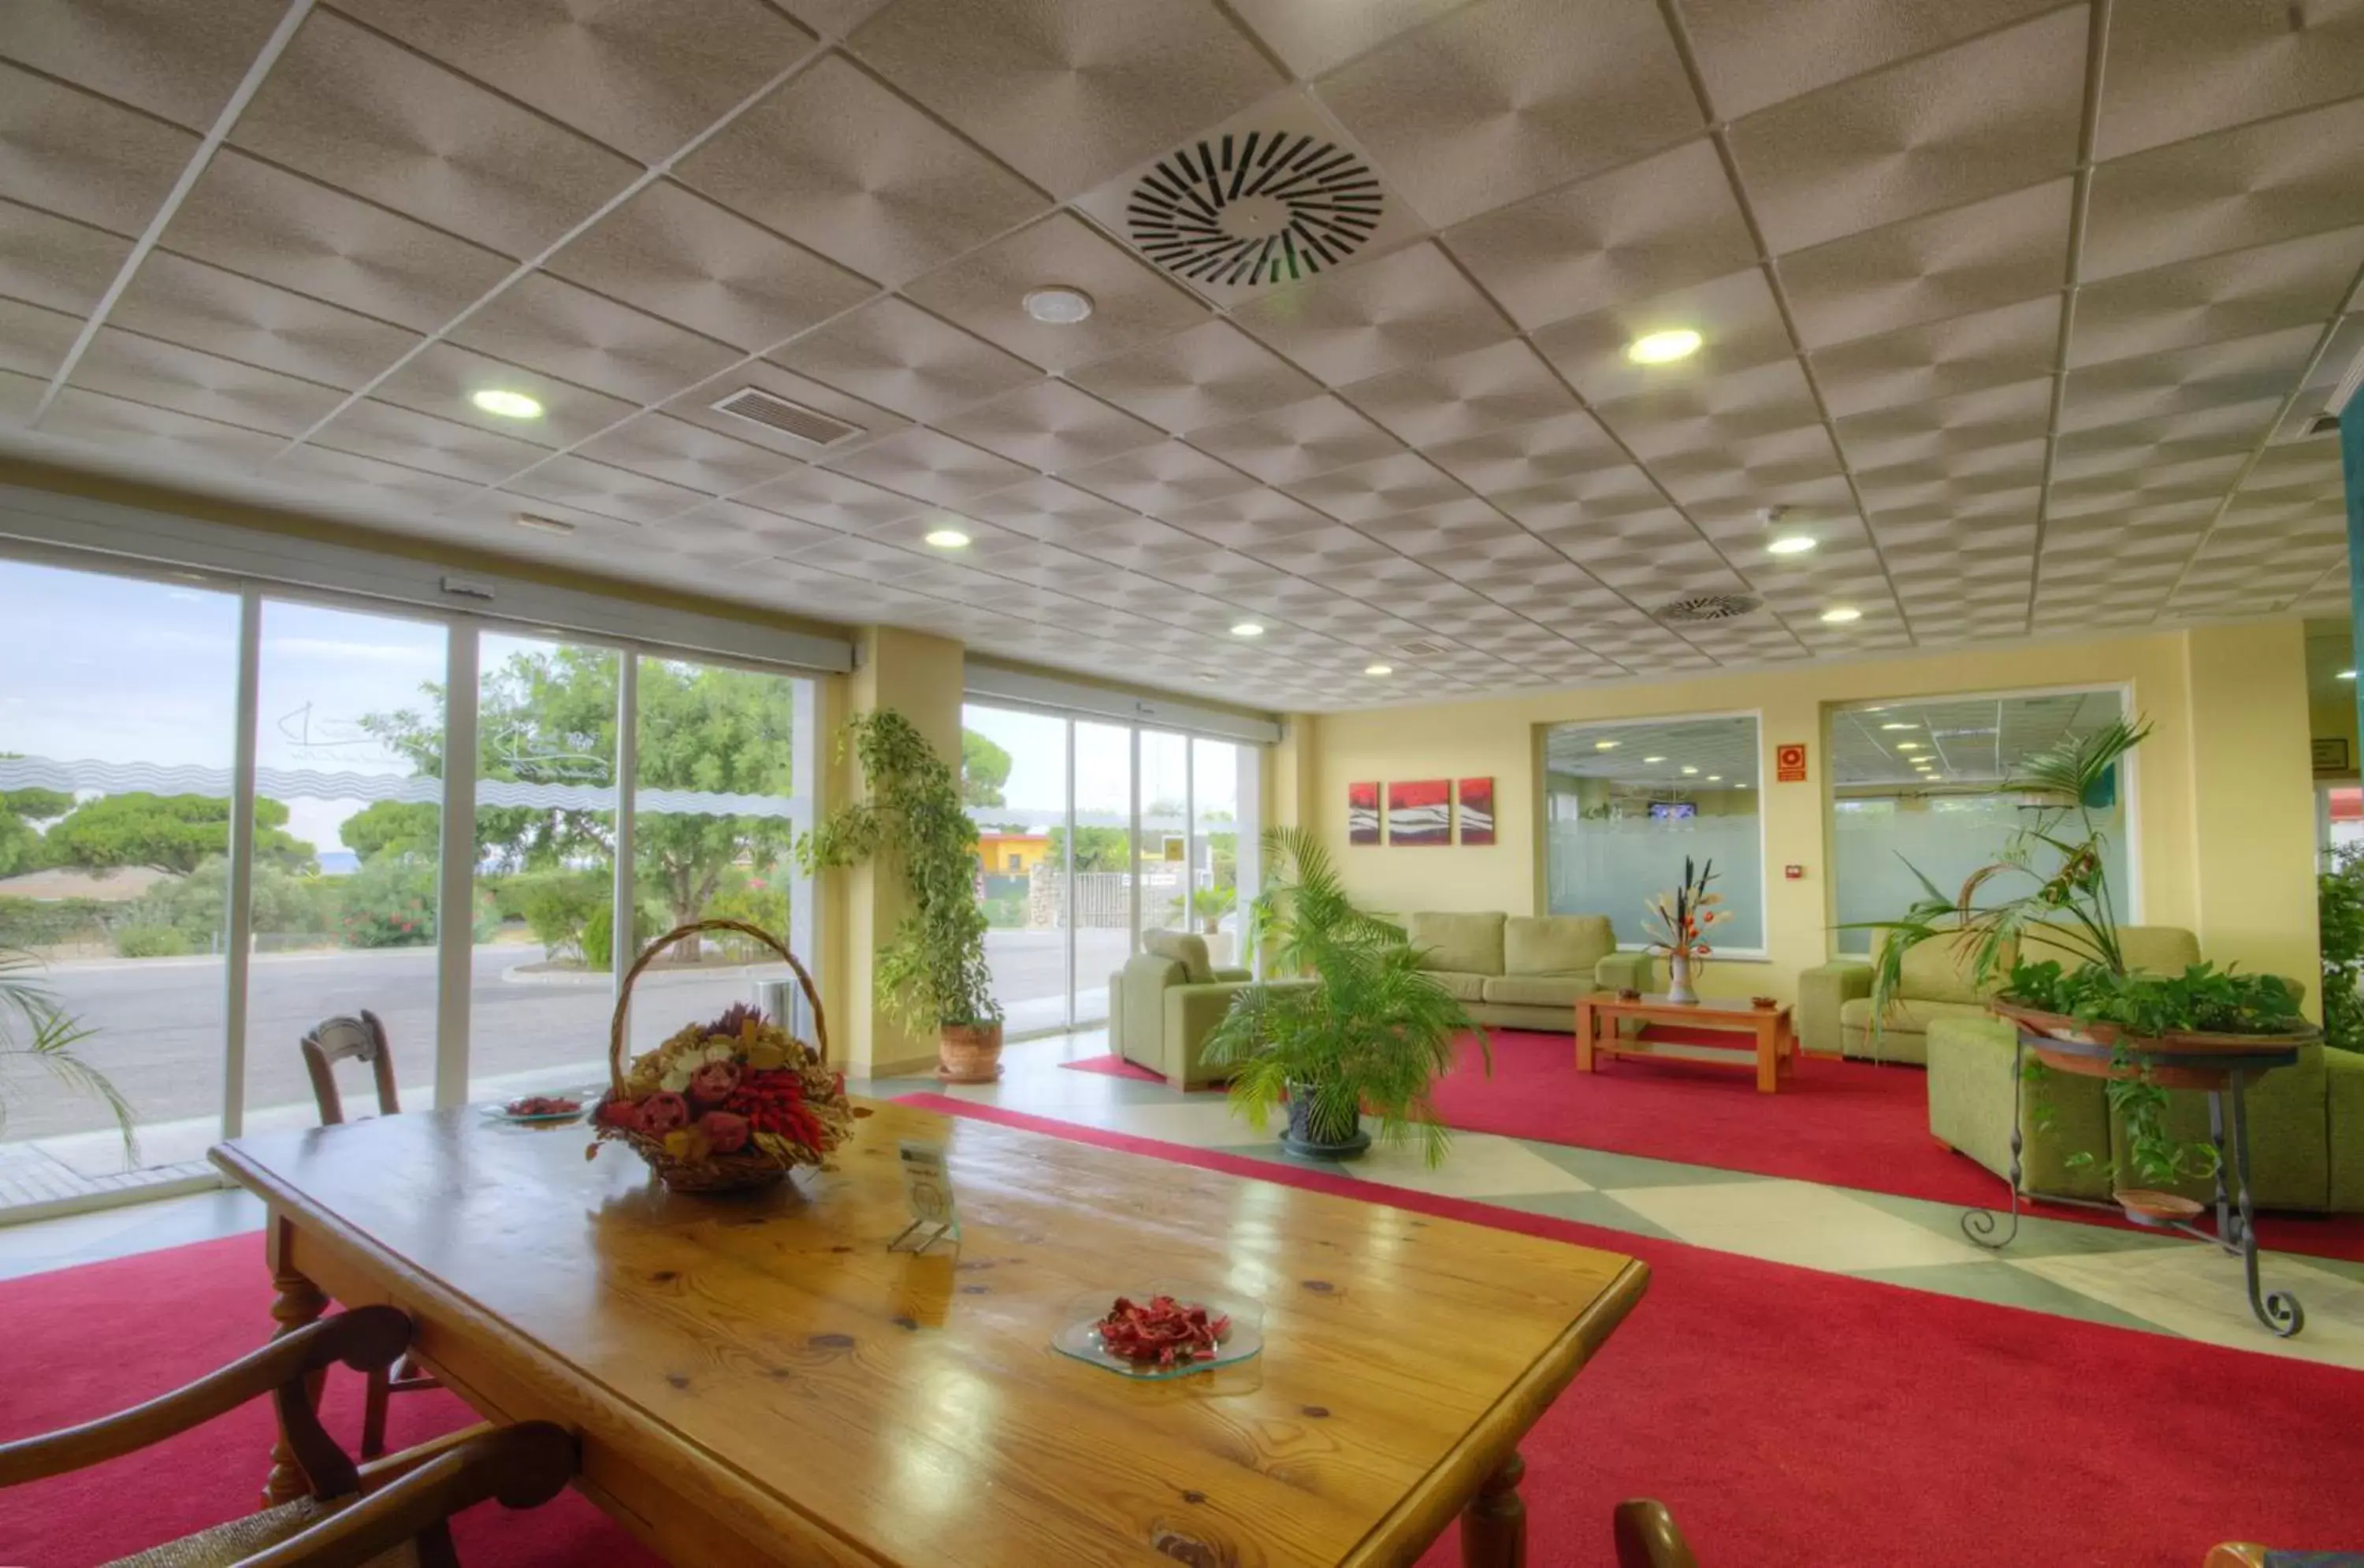 Lobby or reception in Gran Hotel Ciudad Del Sur